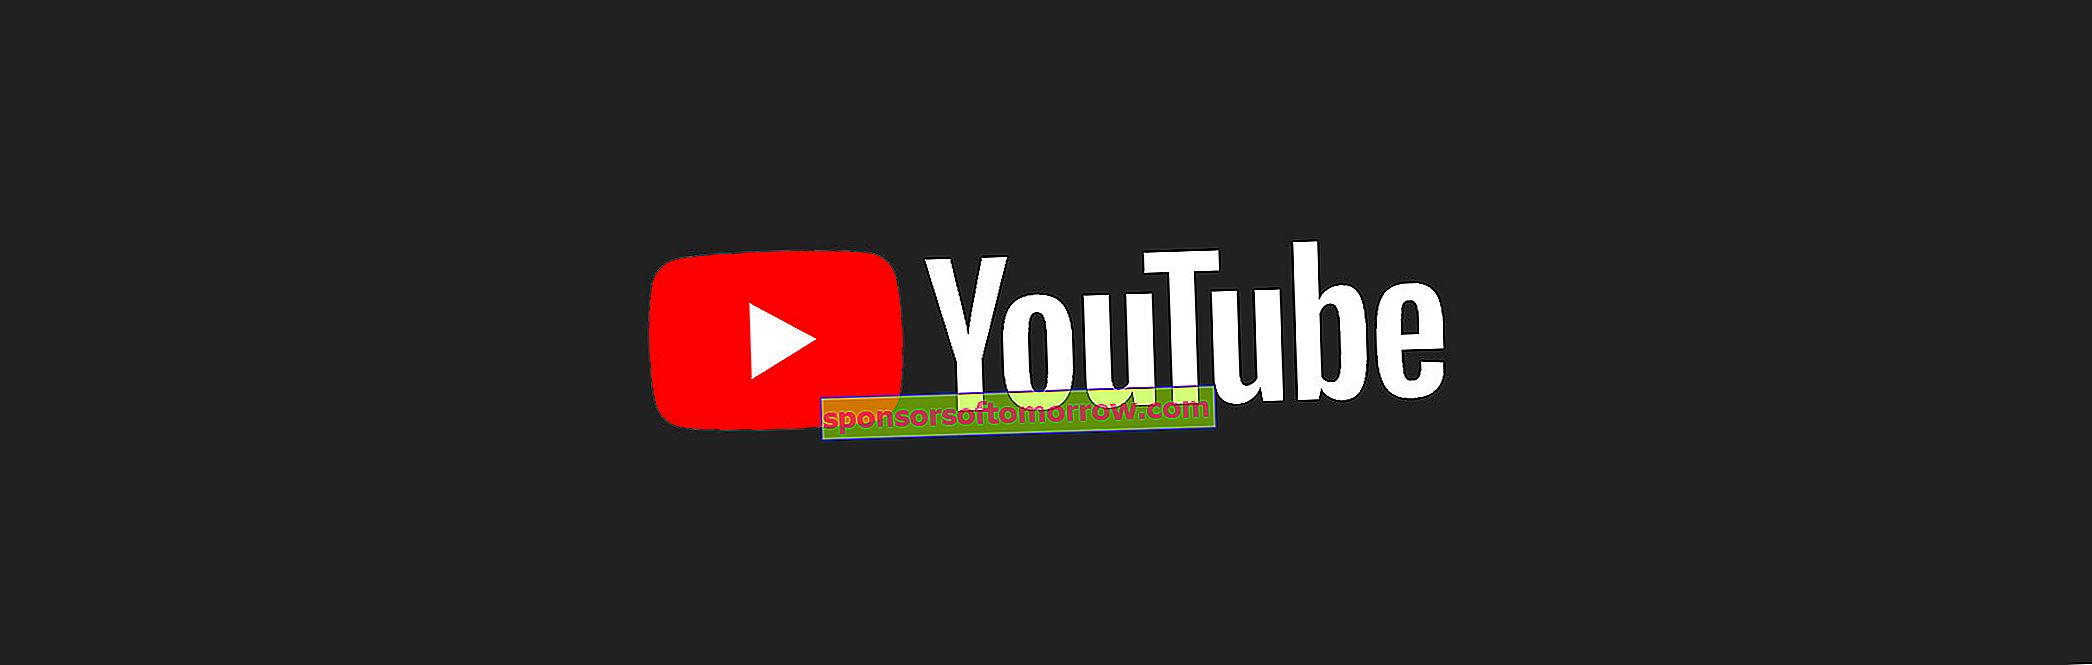 Graphiques YouTube, pour que vous puissiez connaître les tendances musicales sur YouTube